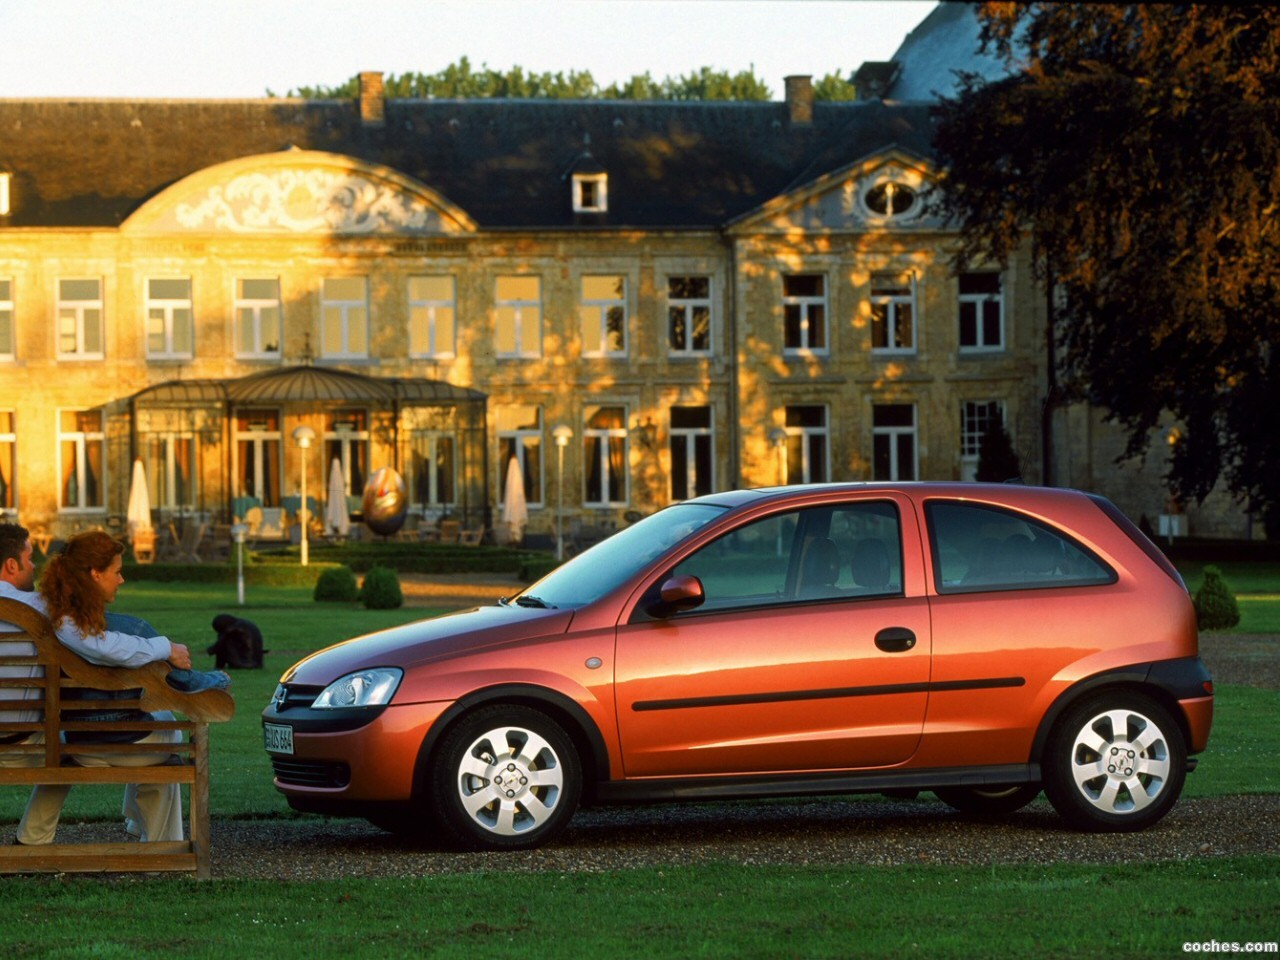 Opel corsa 1.0. Opel Corsa c 2000. Opel Corsa c 1.2. Opel Corsa c 2003. Opel Corsa 1.2 2003.